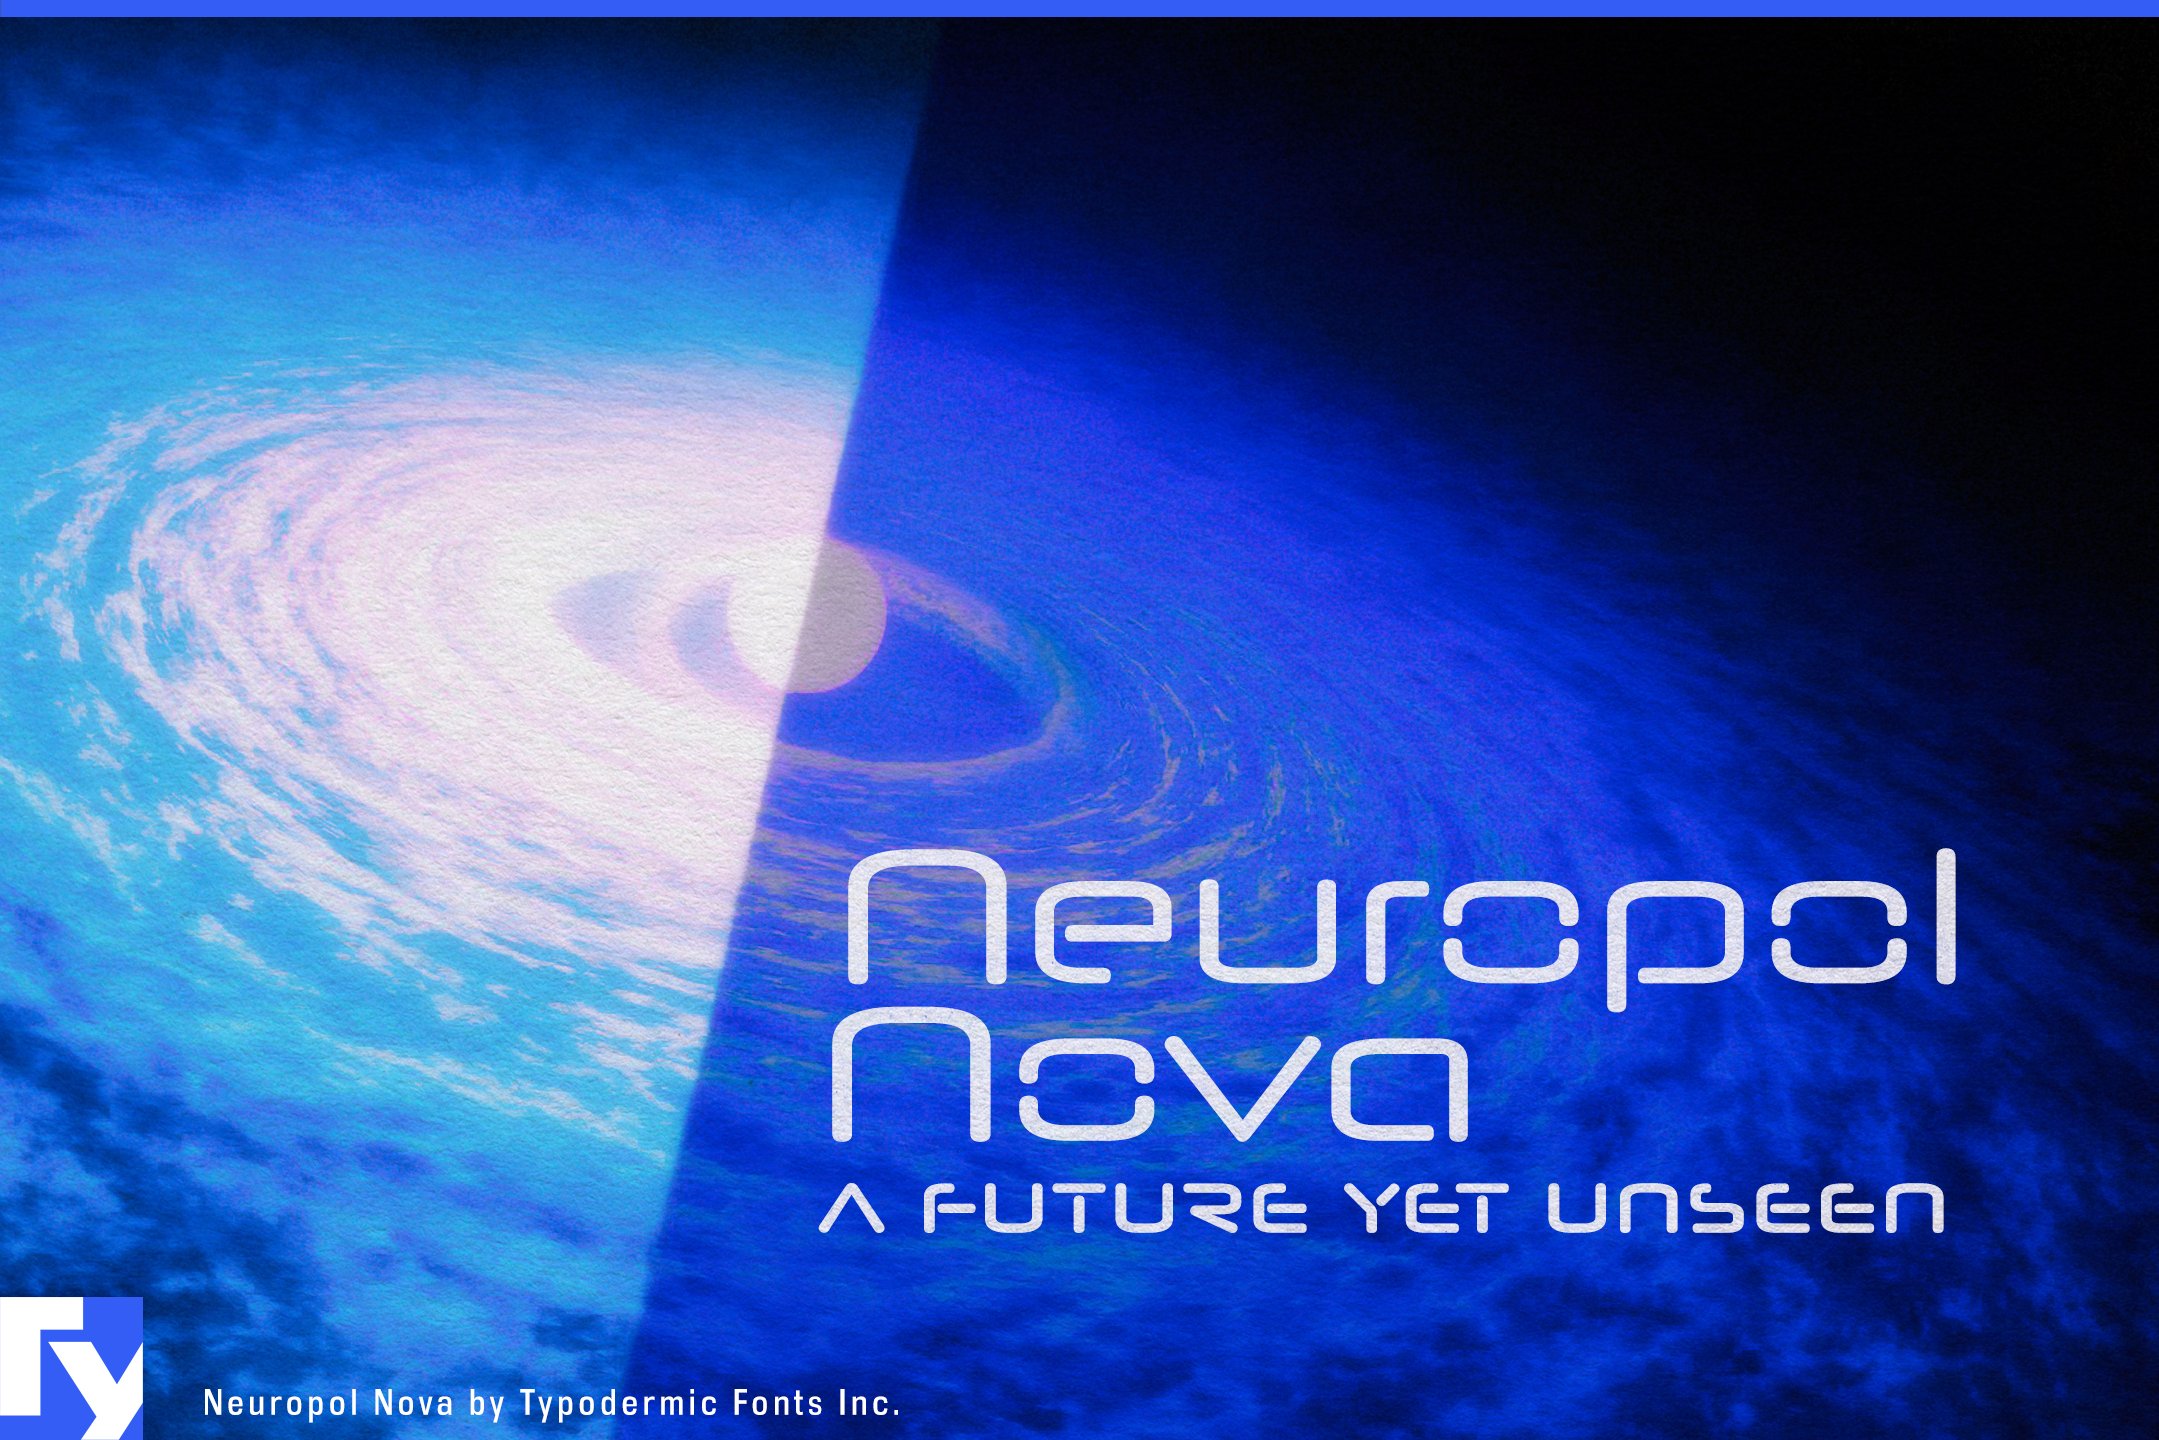 Neuropol Nova cover image.